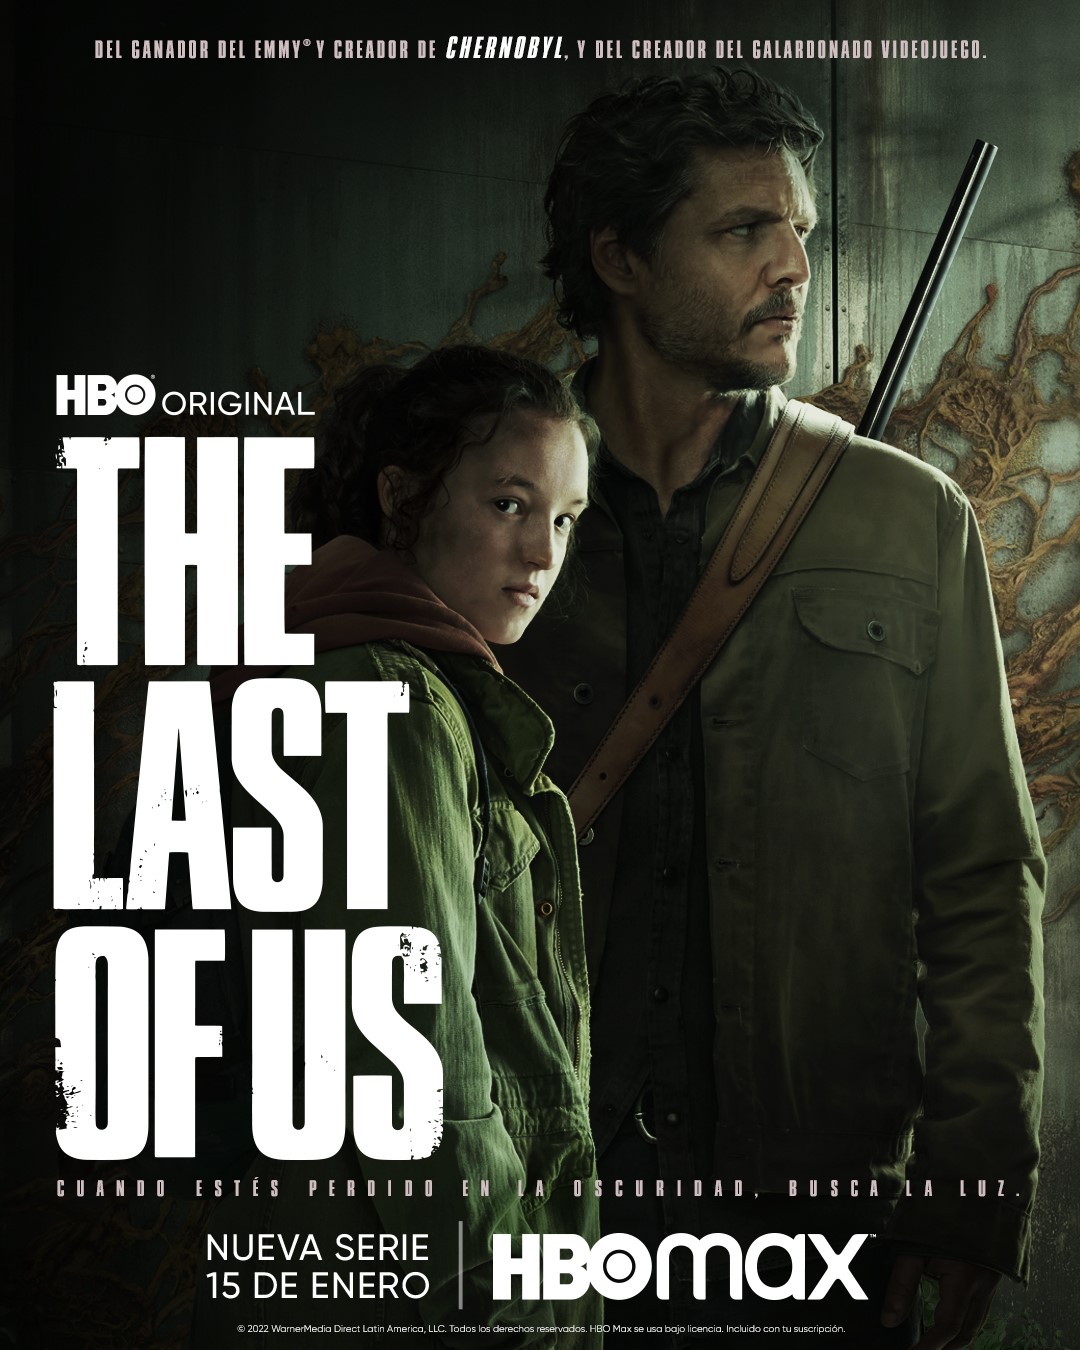 HBO Max presento el poster de THE LAST OF US